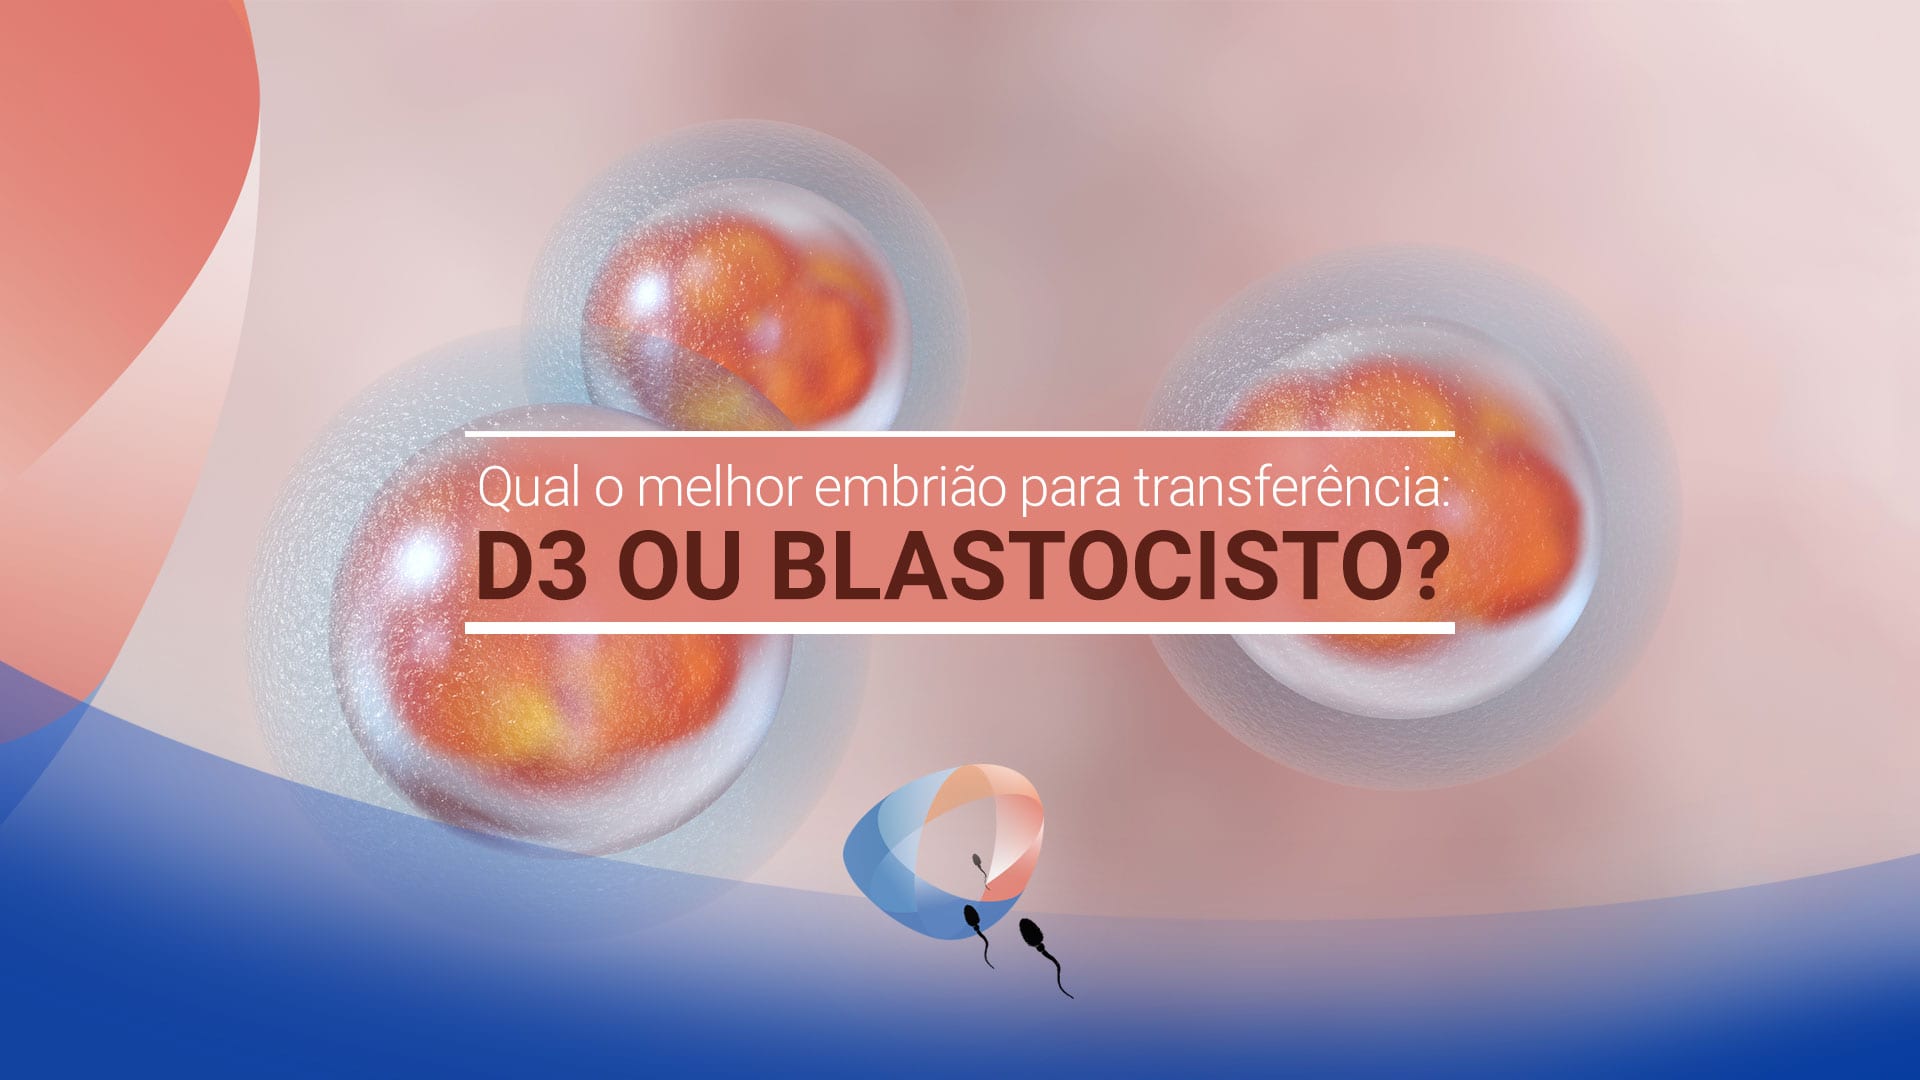 Qual o melhor embrião para transferência: D3 ou blastocisto?